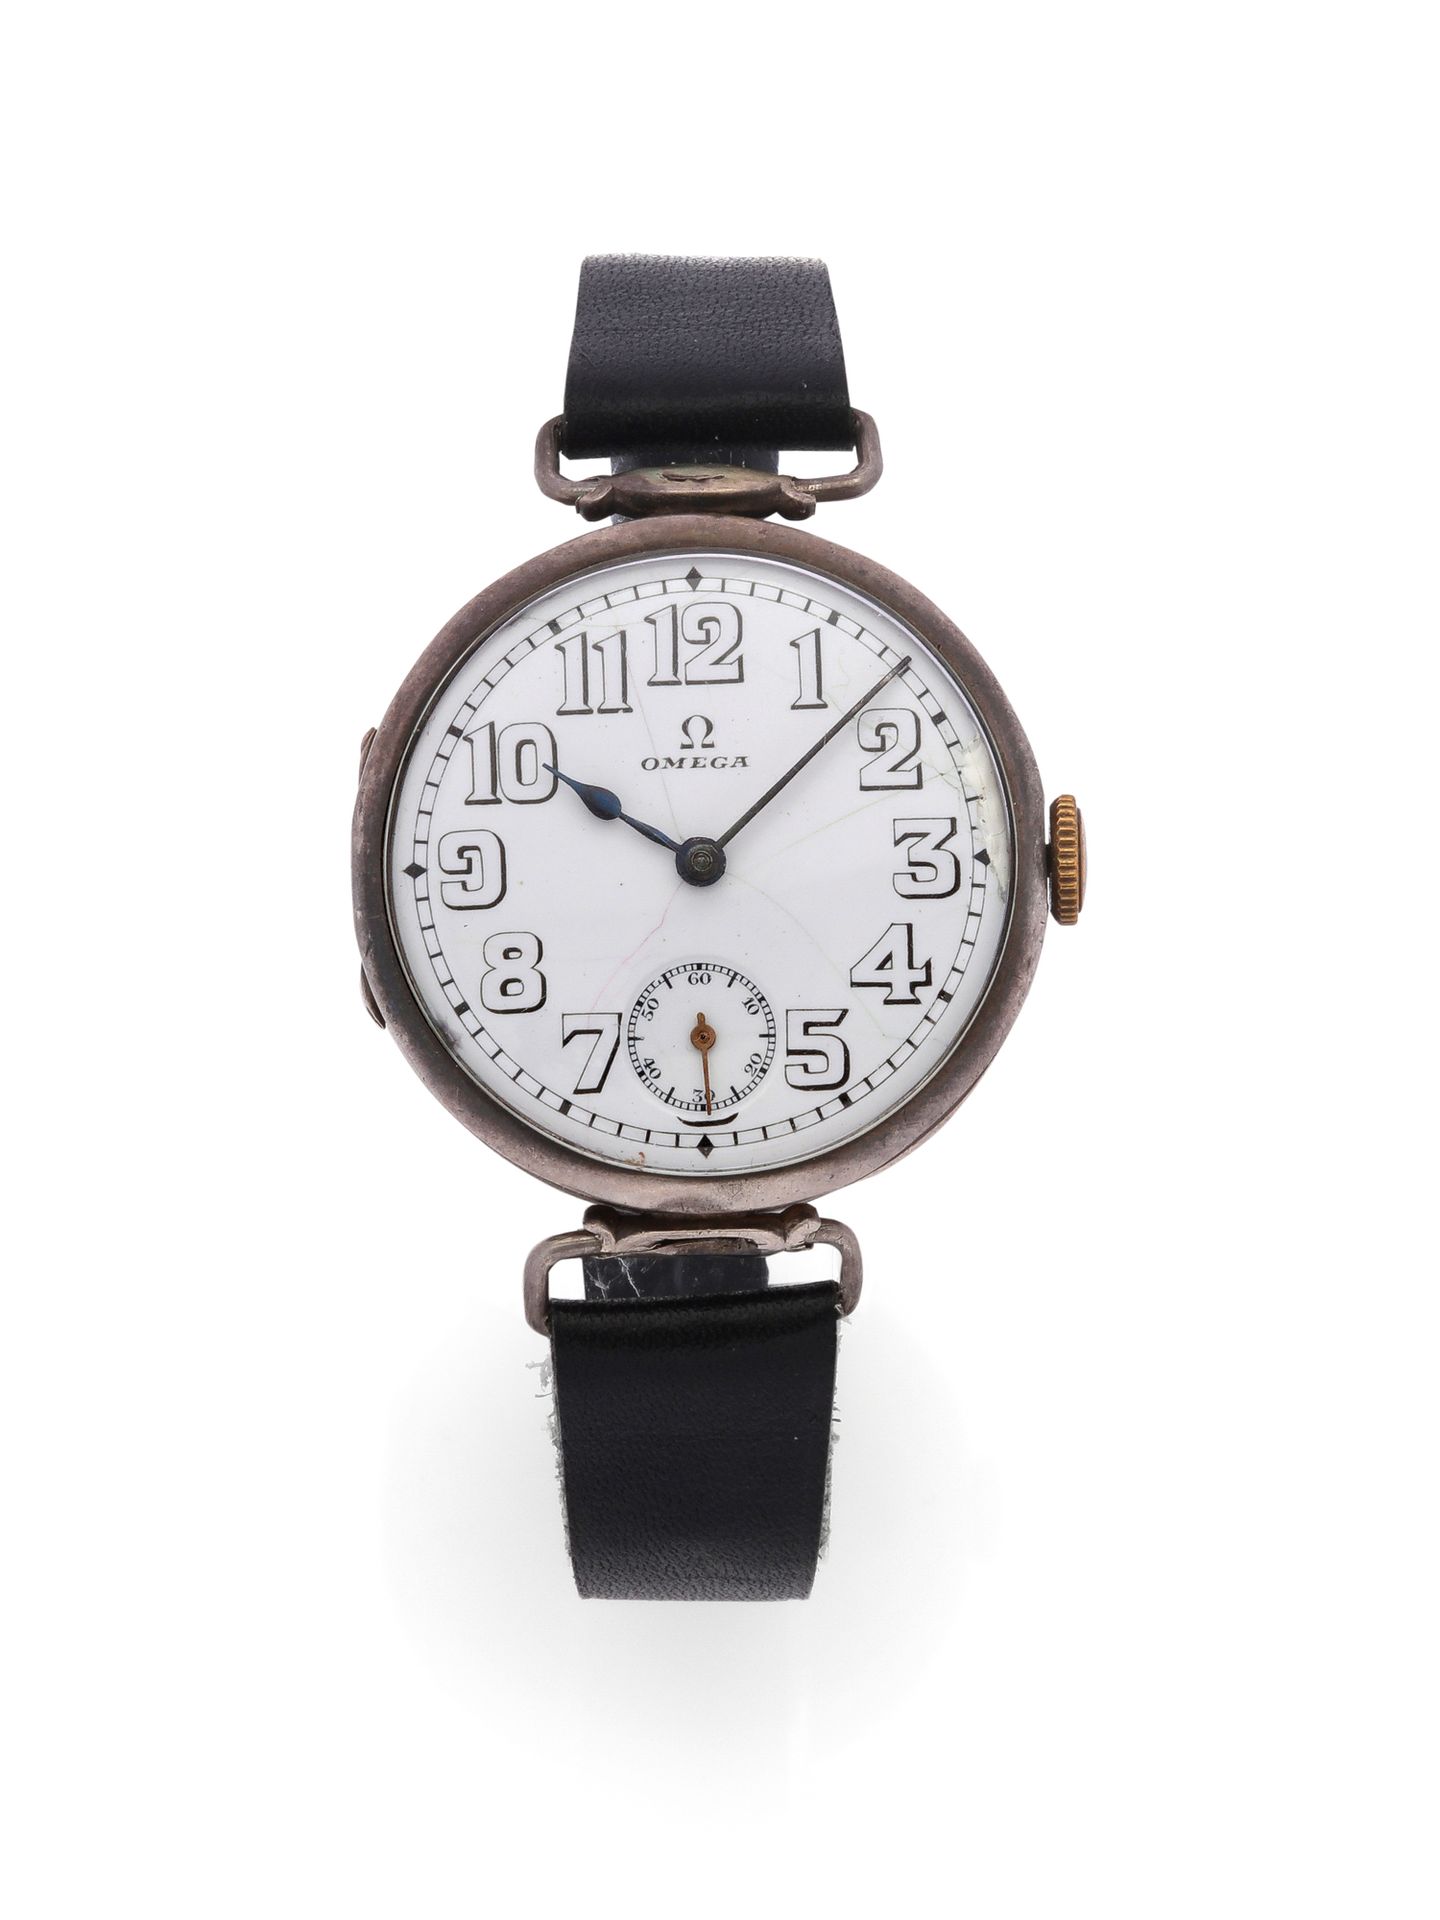 OMEGA Poilu-Uhr aus Silber 900 Tausendstel mit mechanischem Uhrwerk.
- Silbernes&hellip;